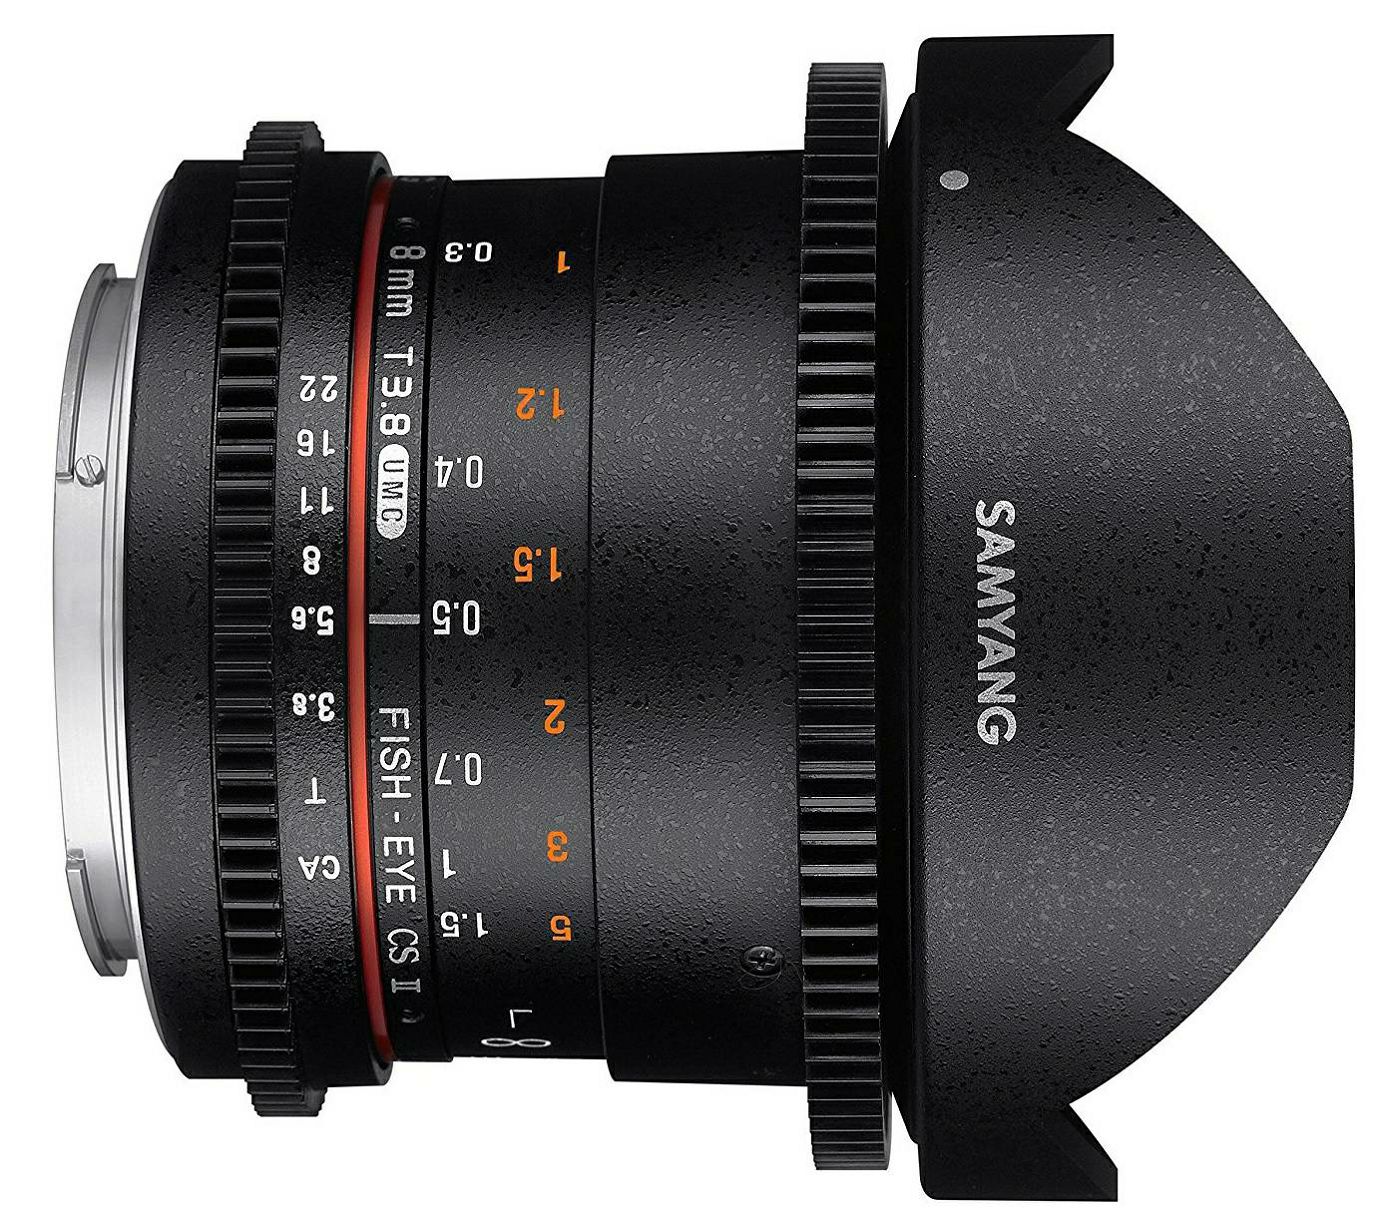 Samyang 8mm T3.8 VDSLR II CSII Fisheye objektiv za Nikon DX